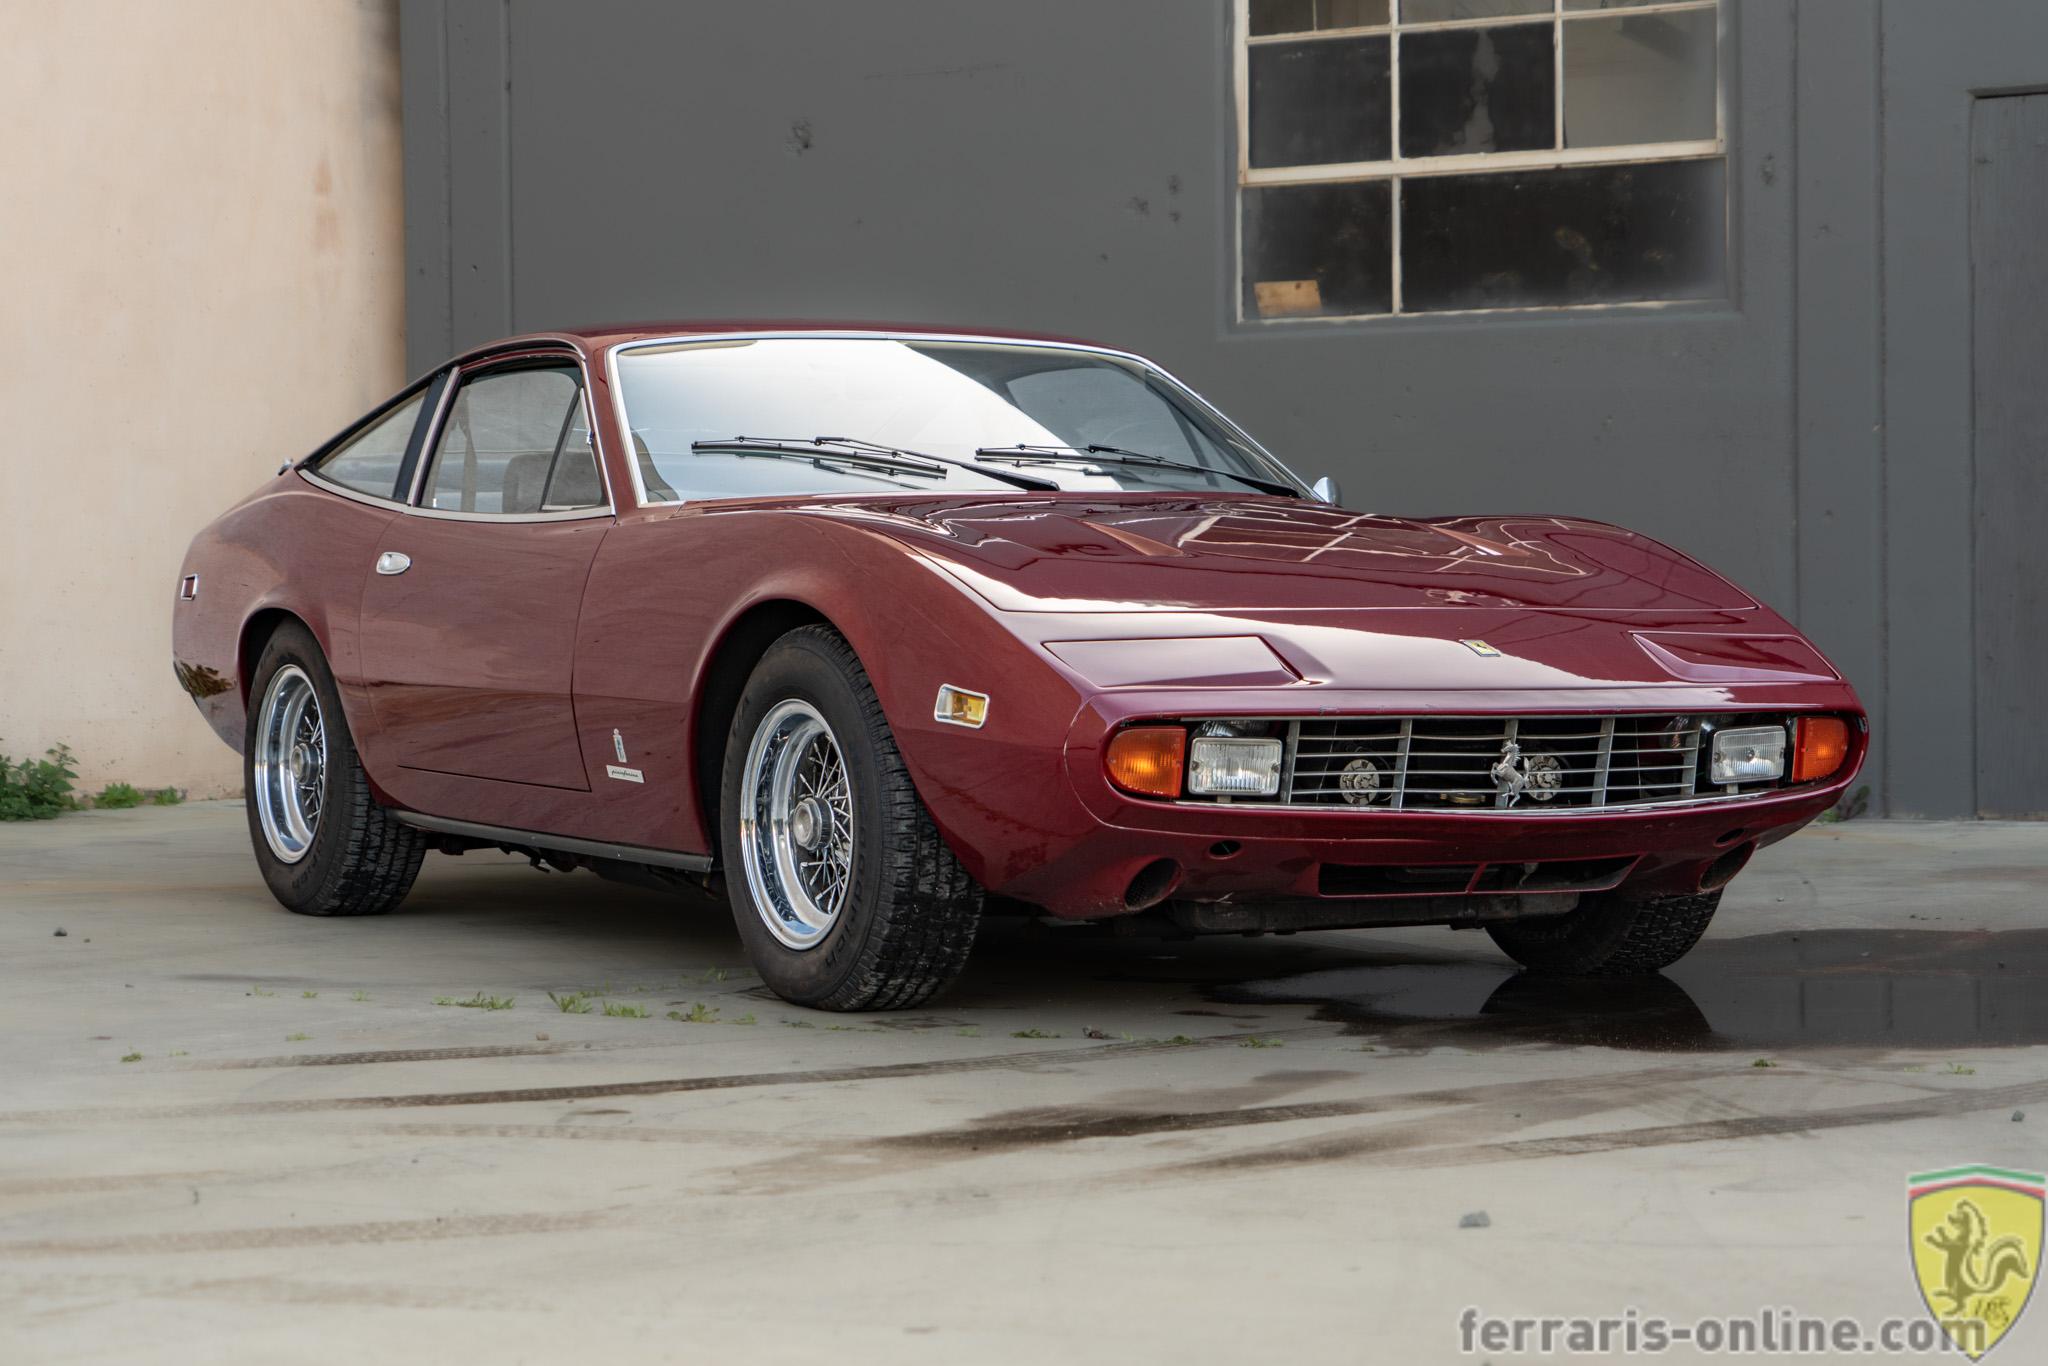 1972 Ferrari 365GTC/4 15485 For Sale - Ferraris Online